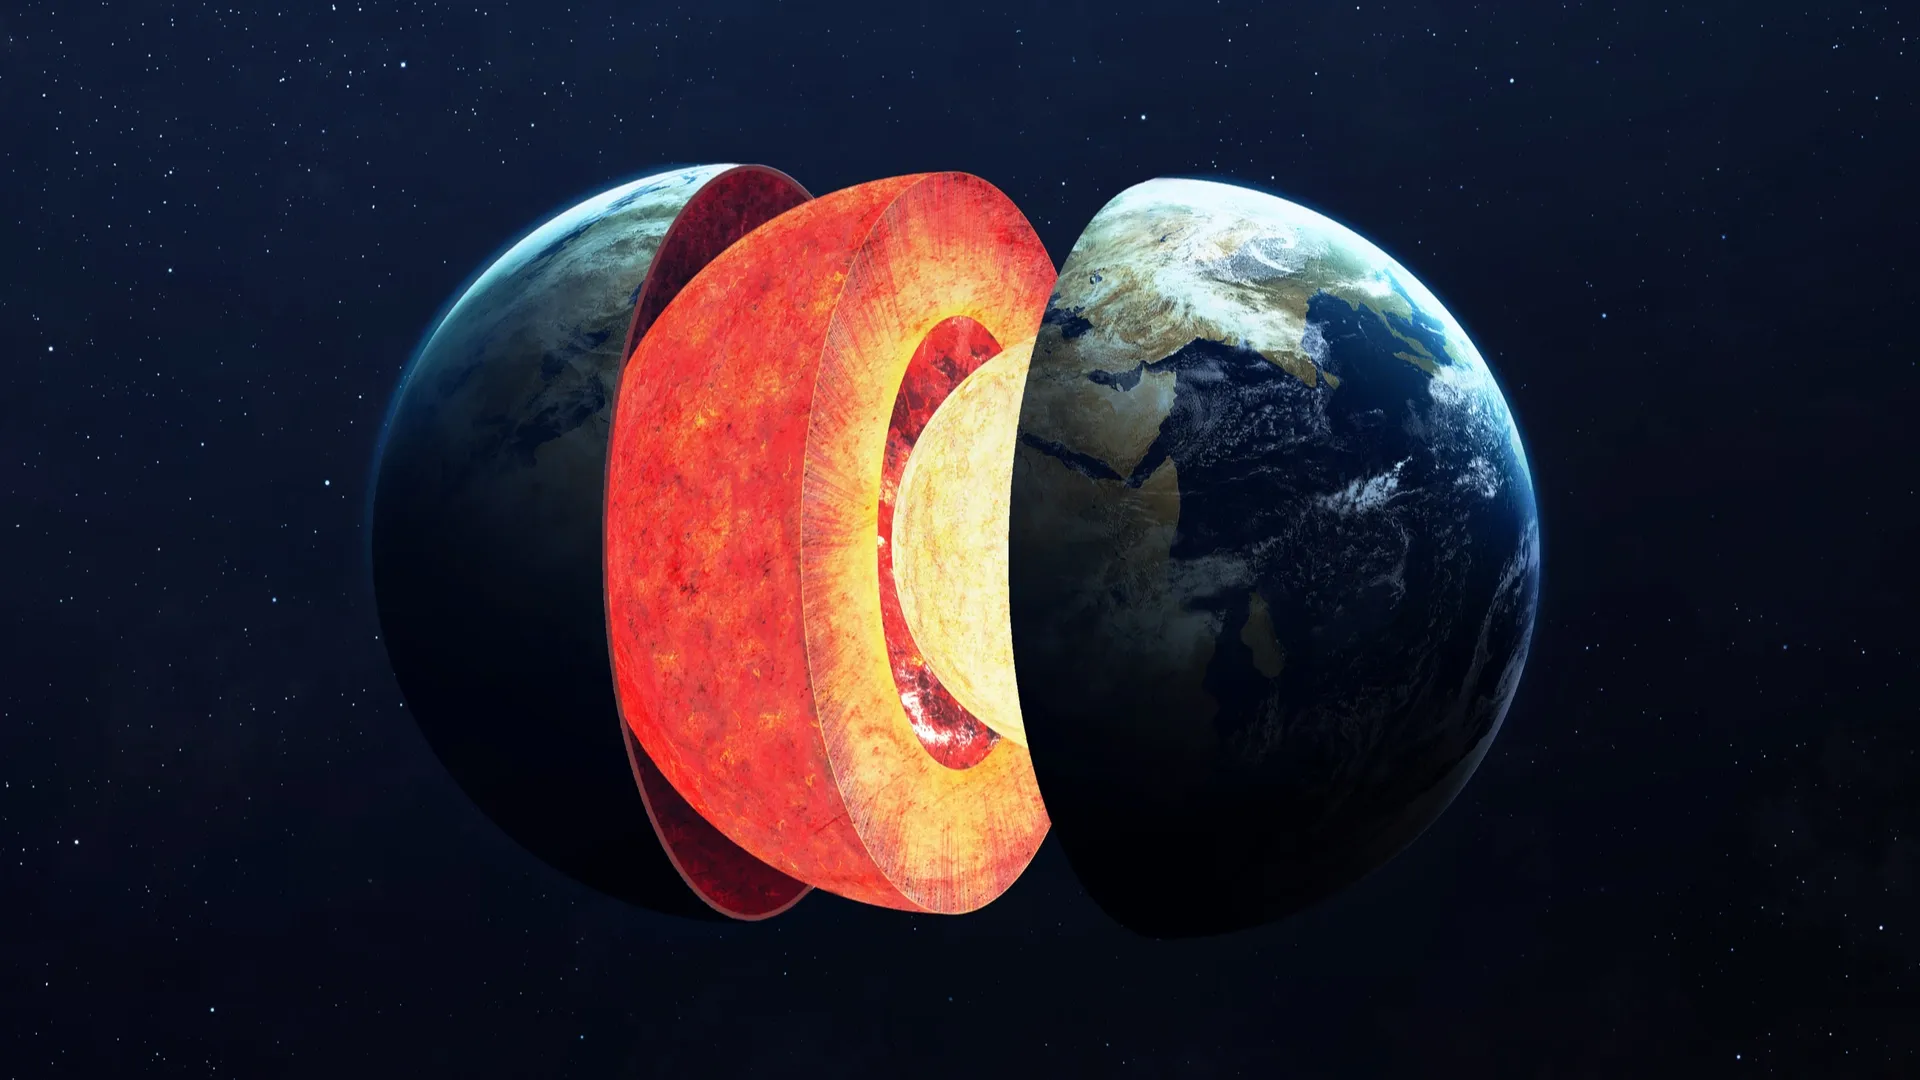 От темпа вращения внутреннего ядра зависит продолжительность земных суток. Фото: Vadim Sadovski / Shutterstock.com